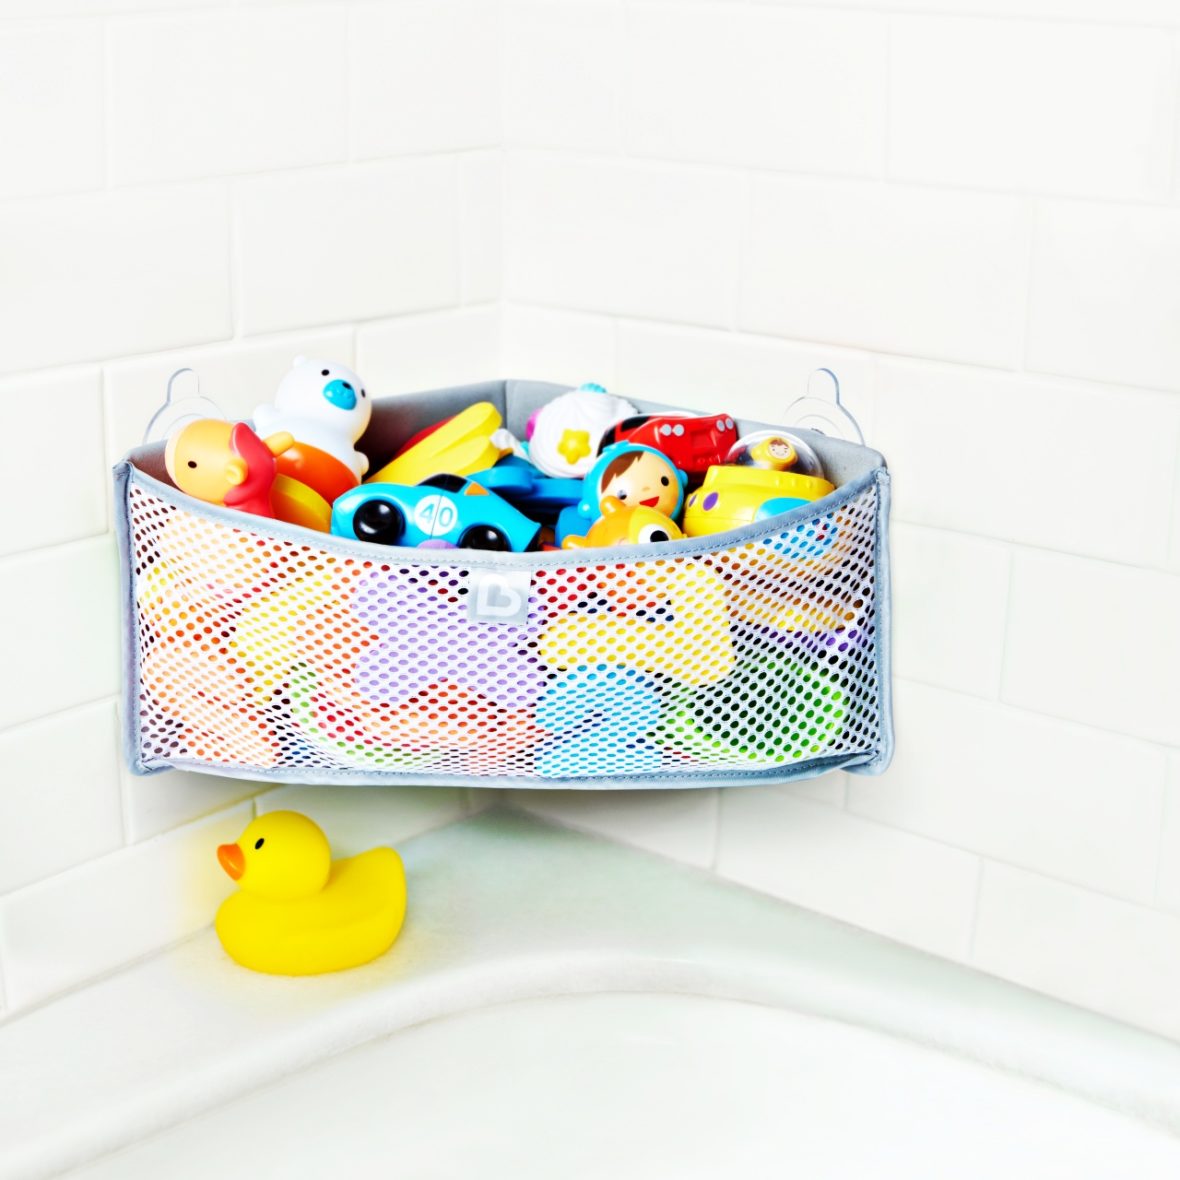 Kompaktiškas kampinis dizainas padidina erdvę vonios žaislams laikyti03